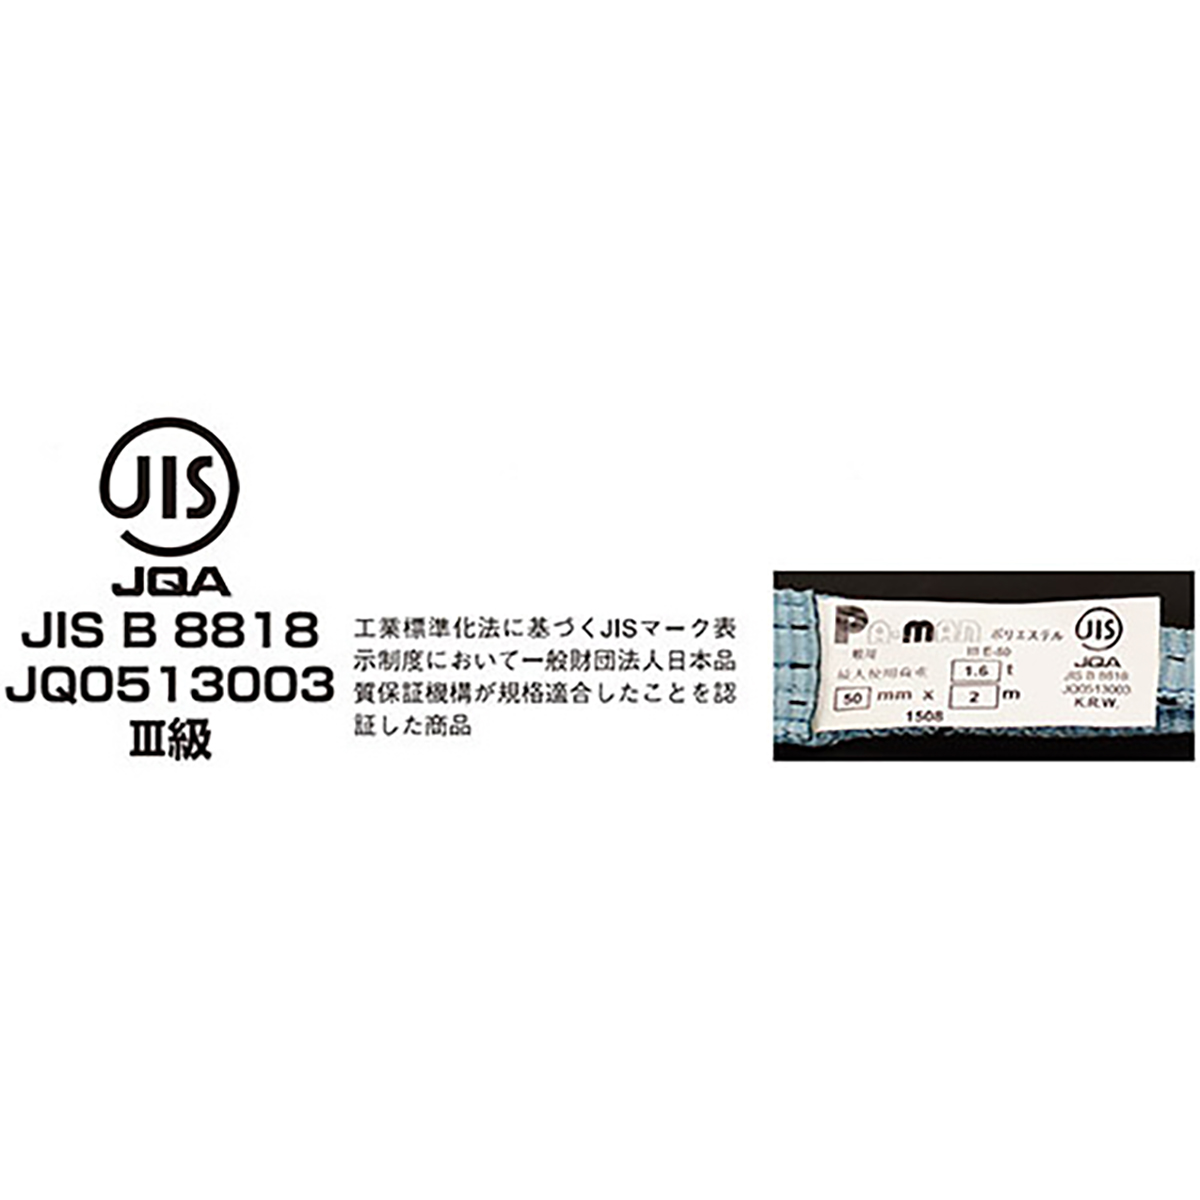 ポリベルトスリング JIS III級 ソフト面付 巾75mm 3m 1本